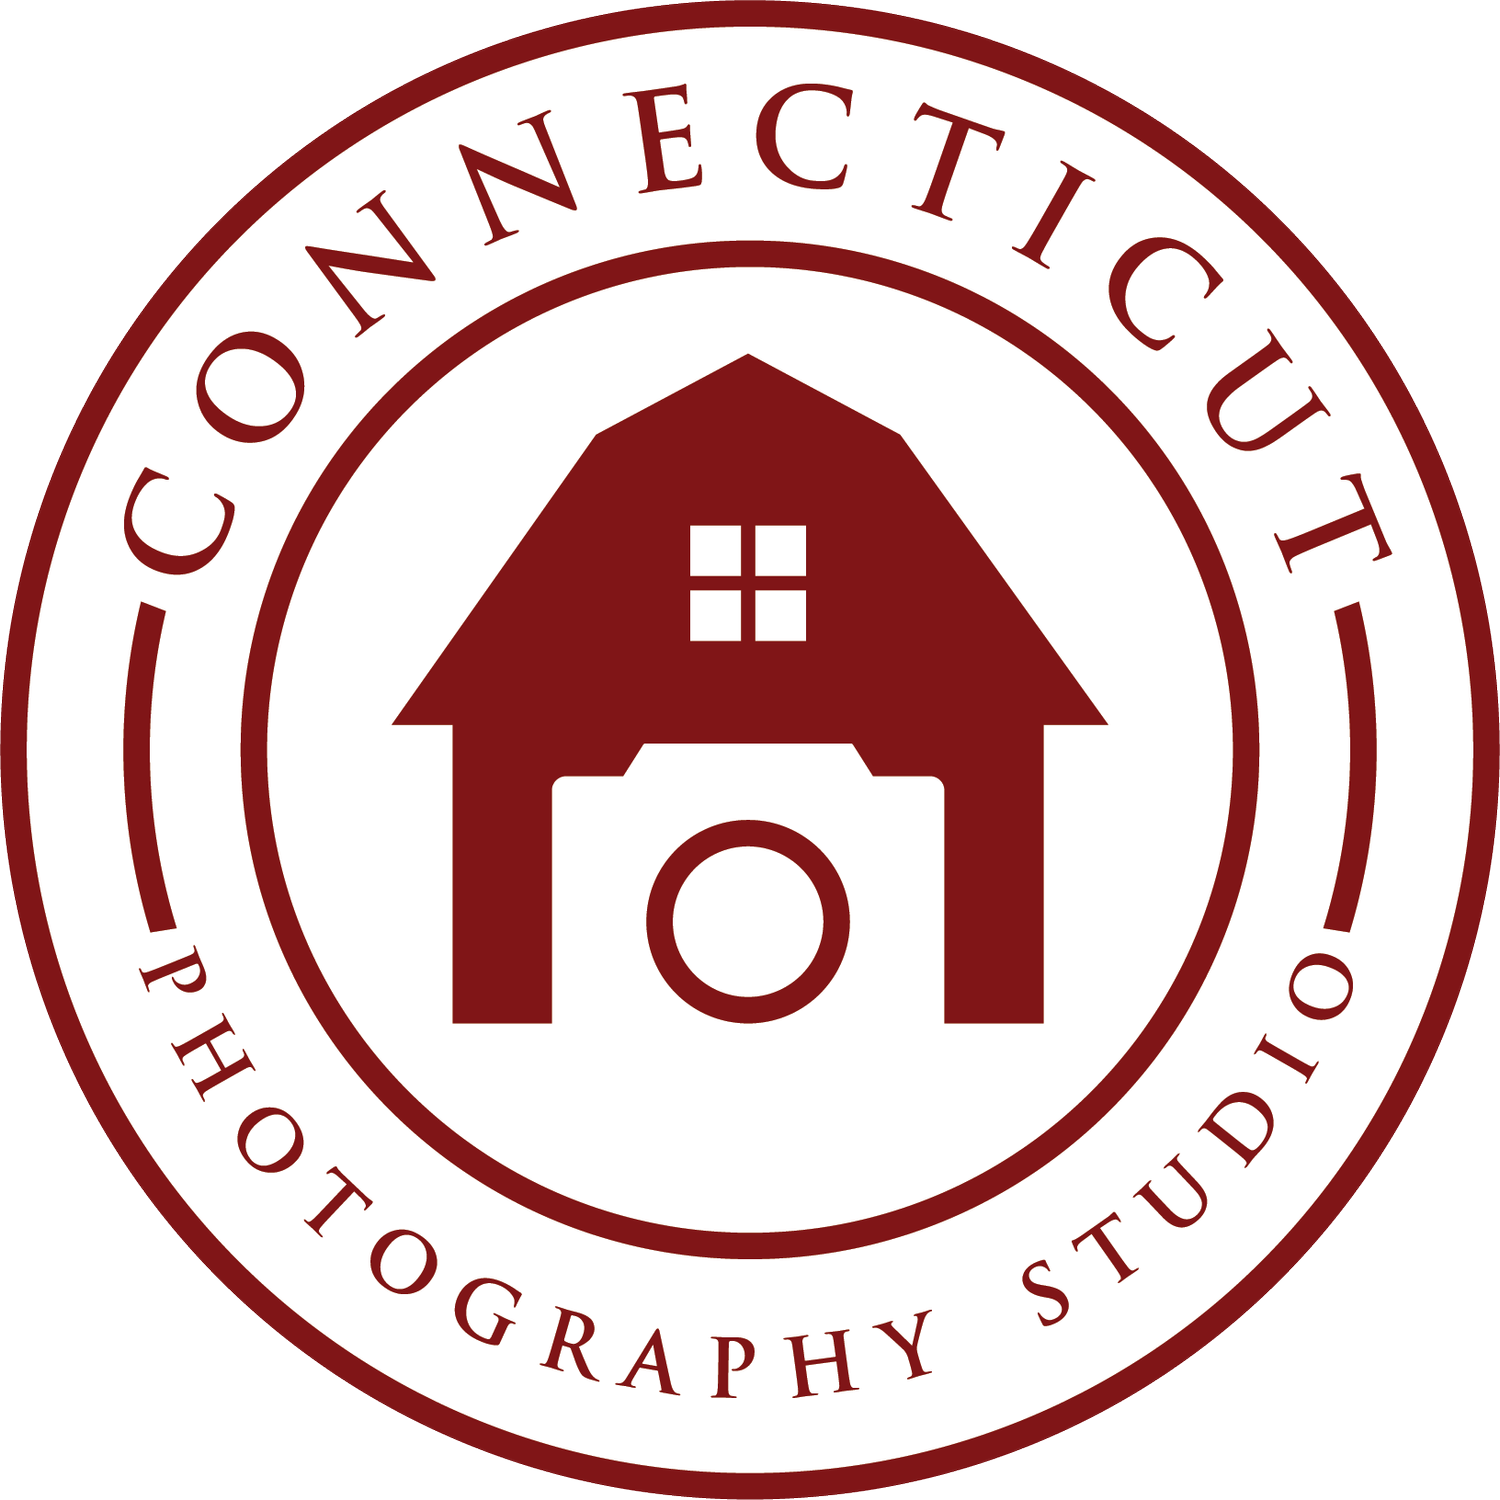 CT Photography Studio